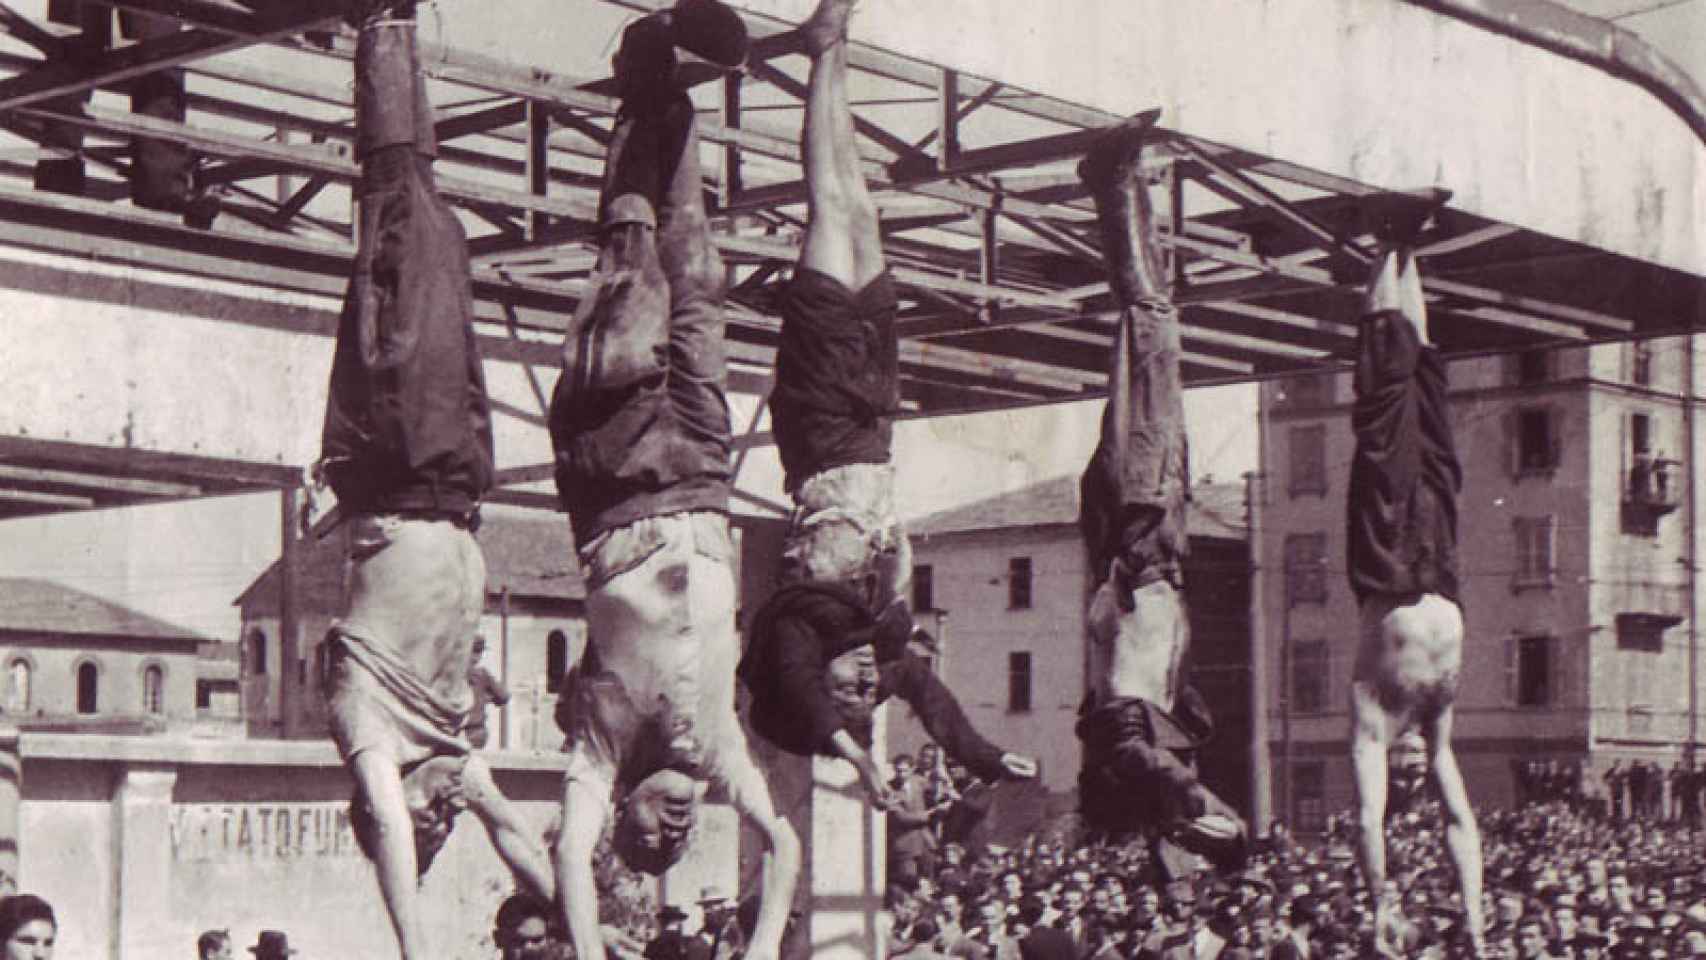 Los cuerpos de Bombacci, Mussolini, Clara Petacci, Pavolini y Starace tras ser ejecutados el 28 de abril de 1945.